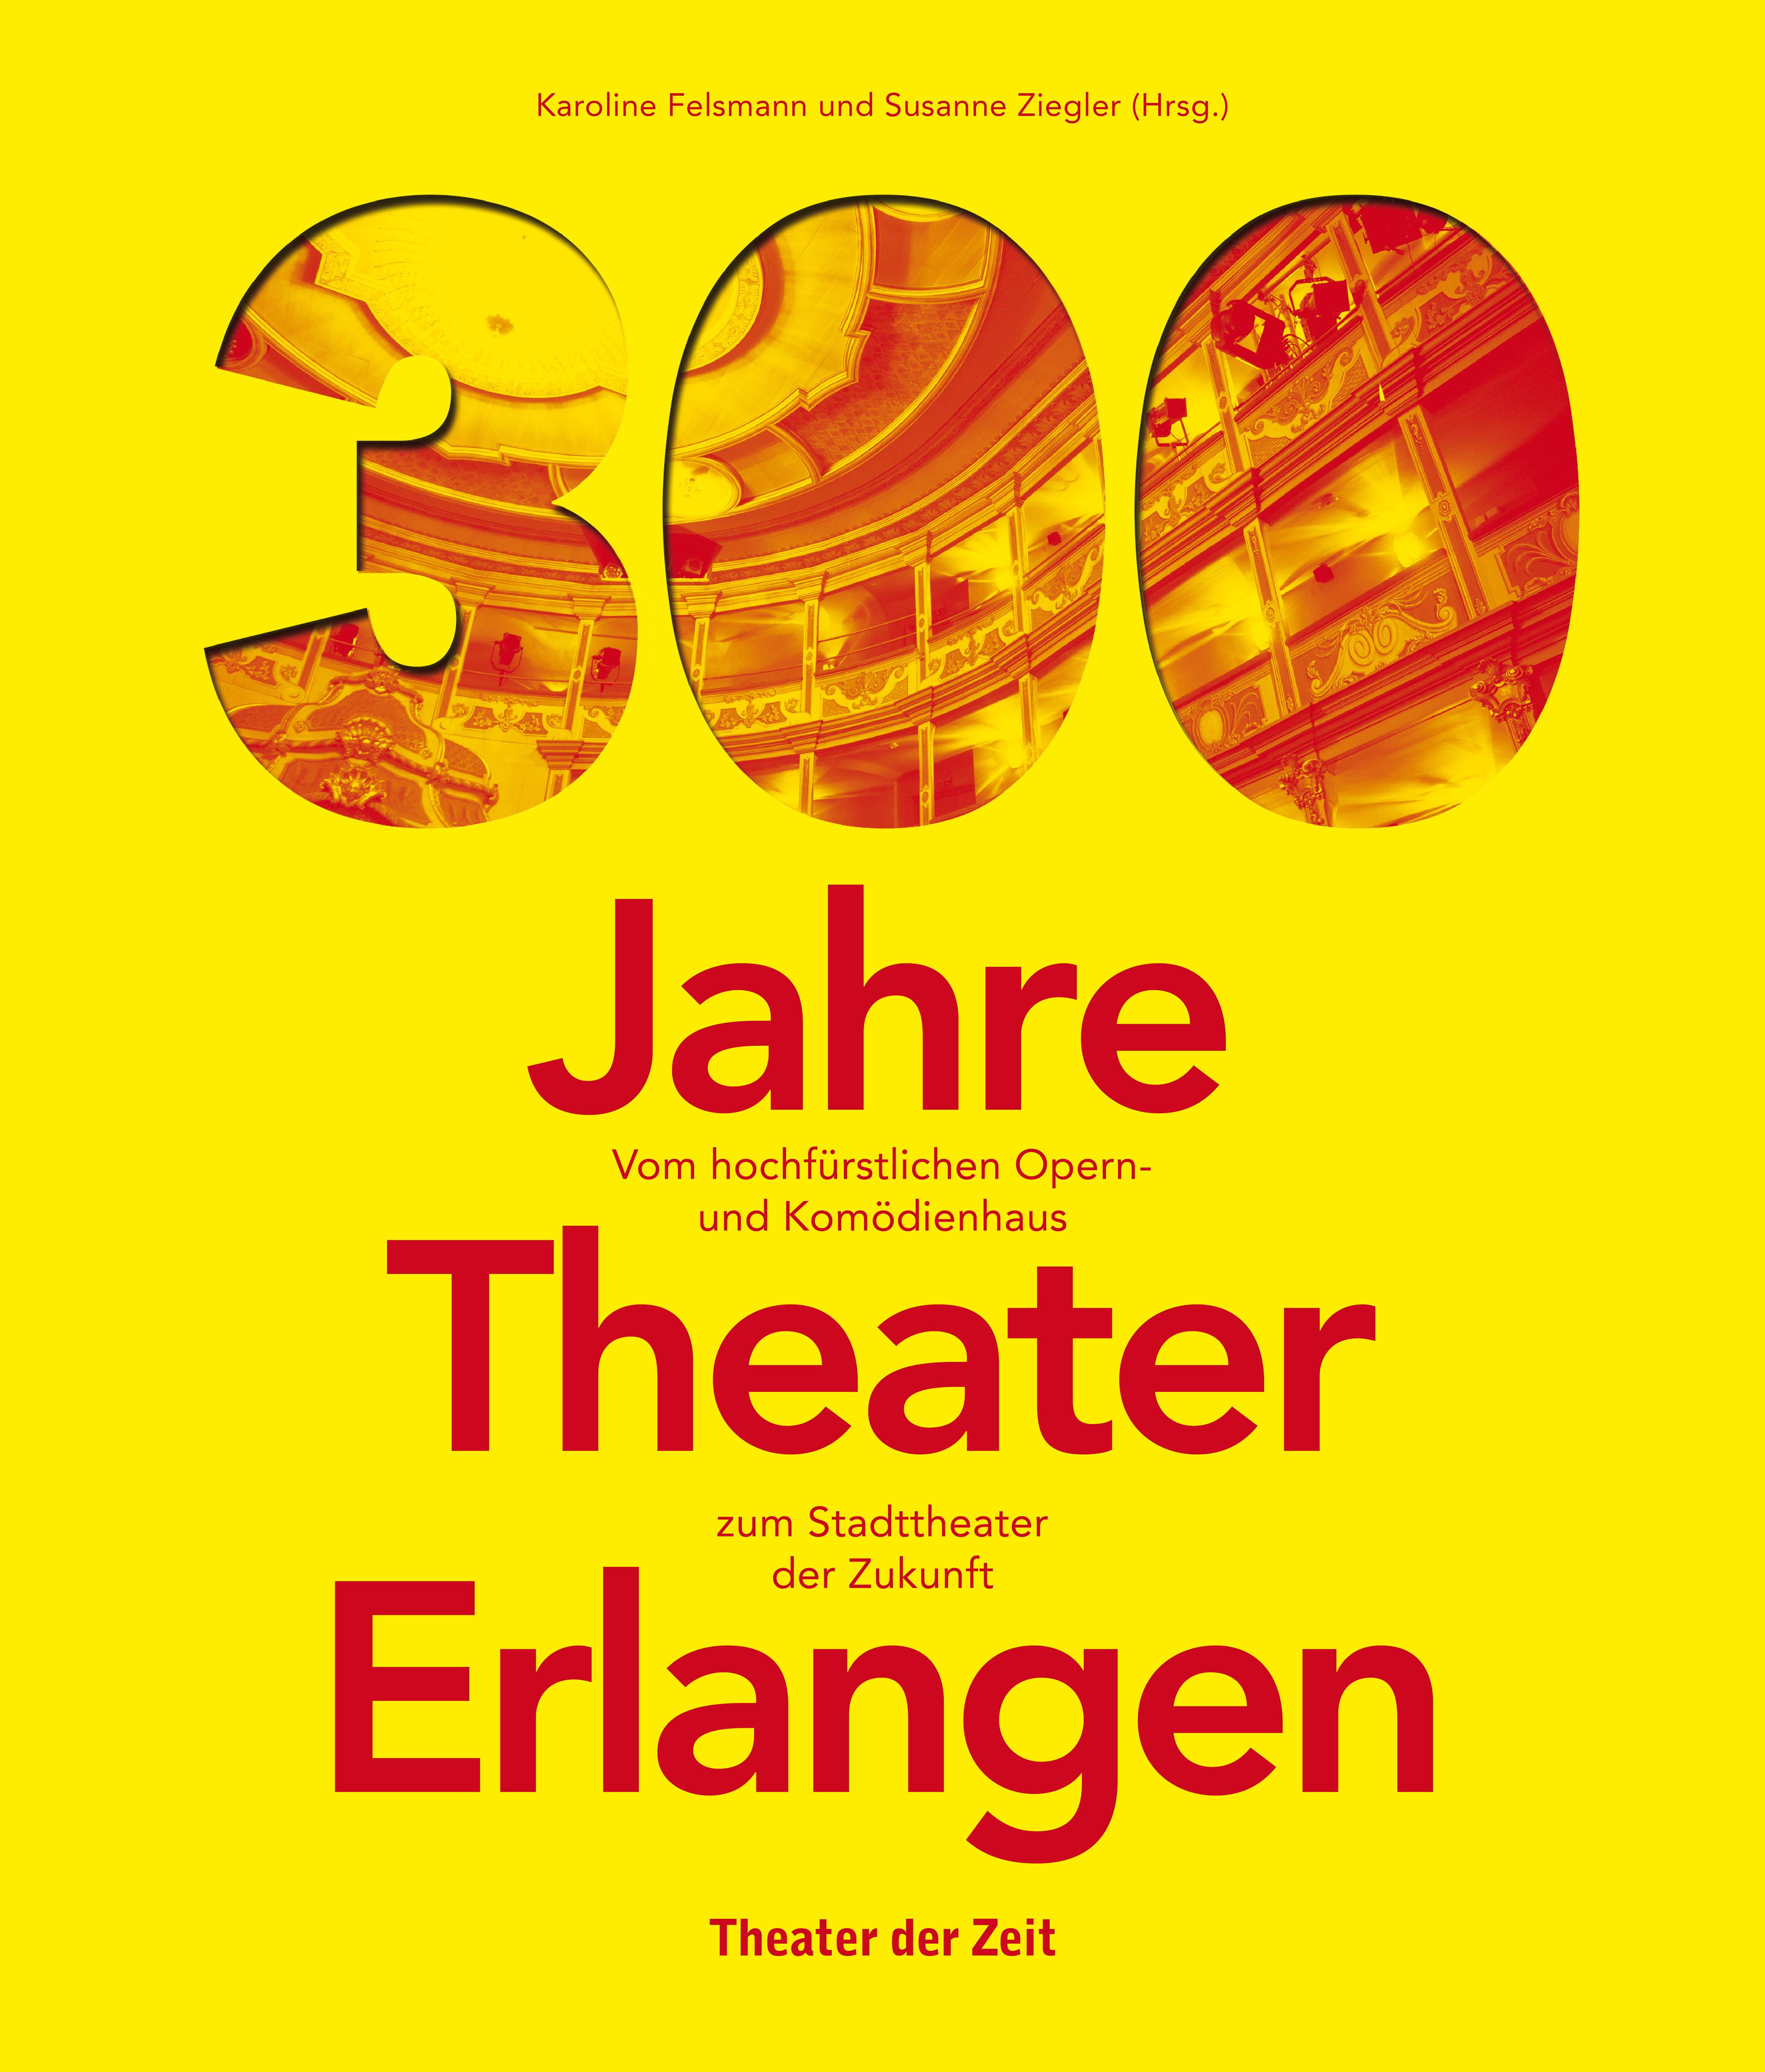 "300 Jahre Theater Erlangen"